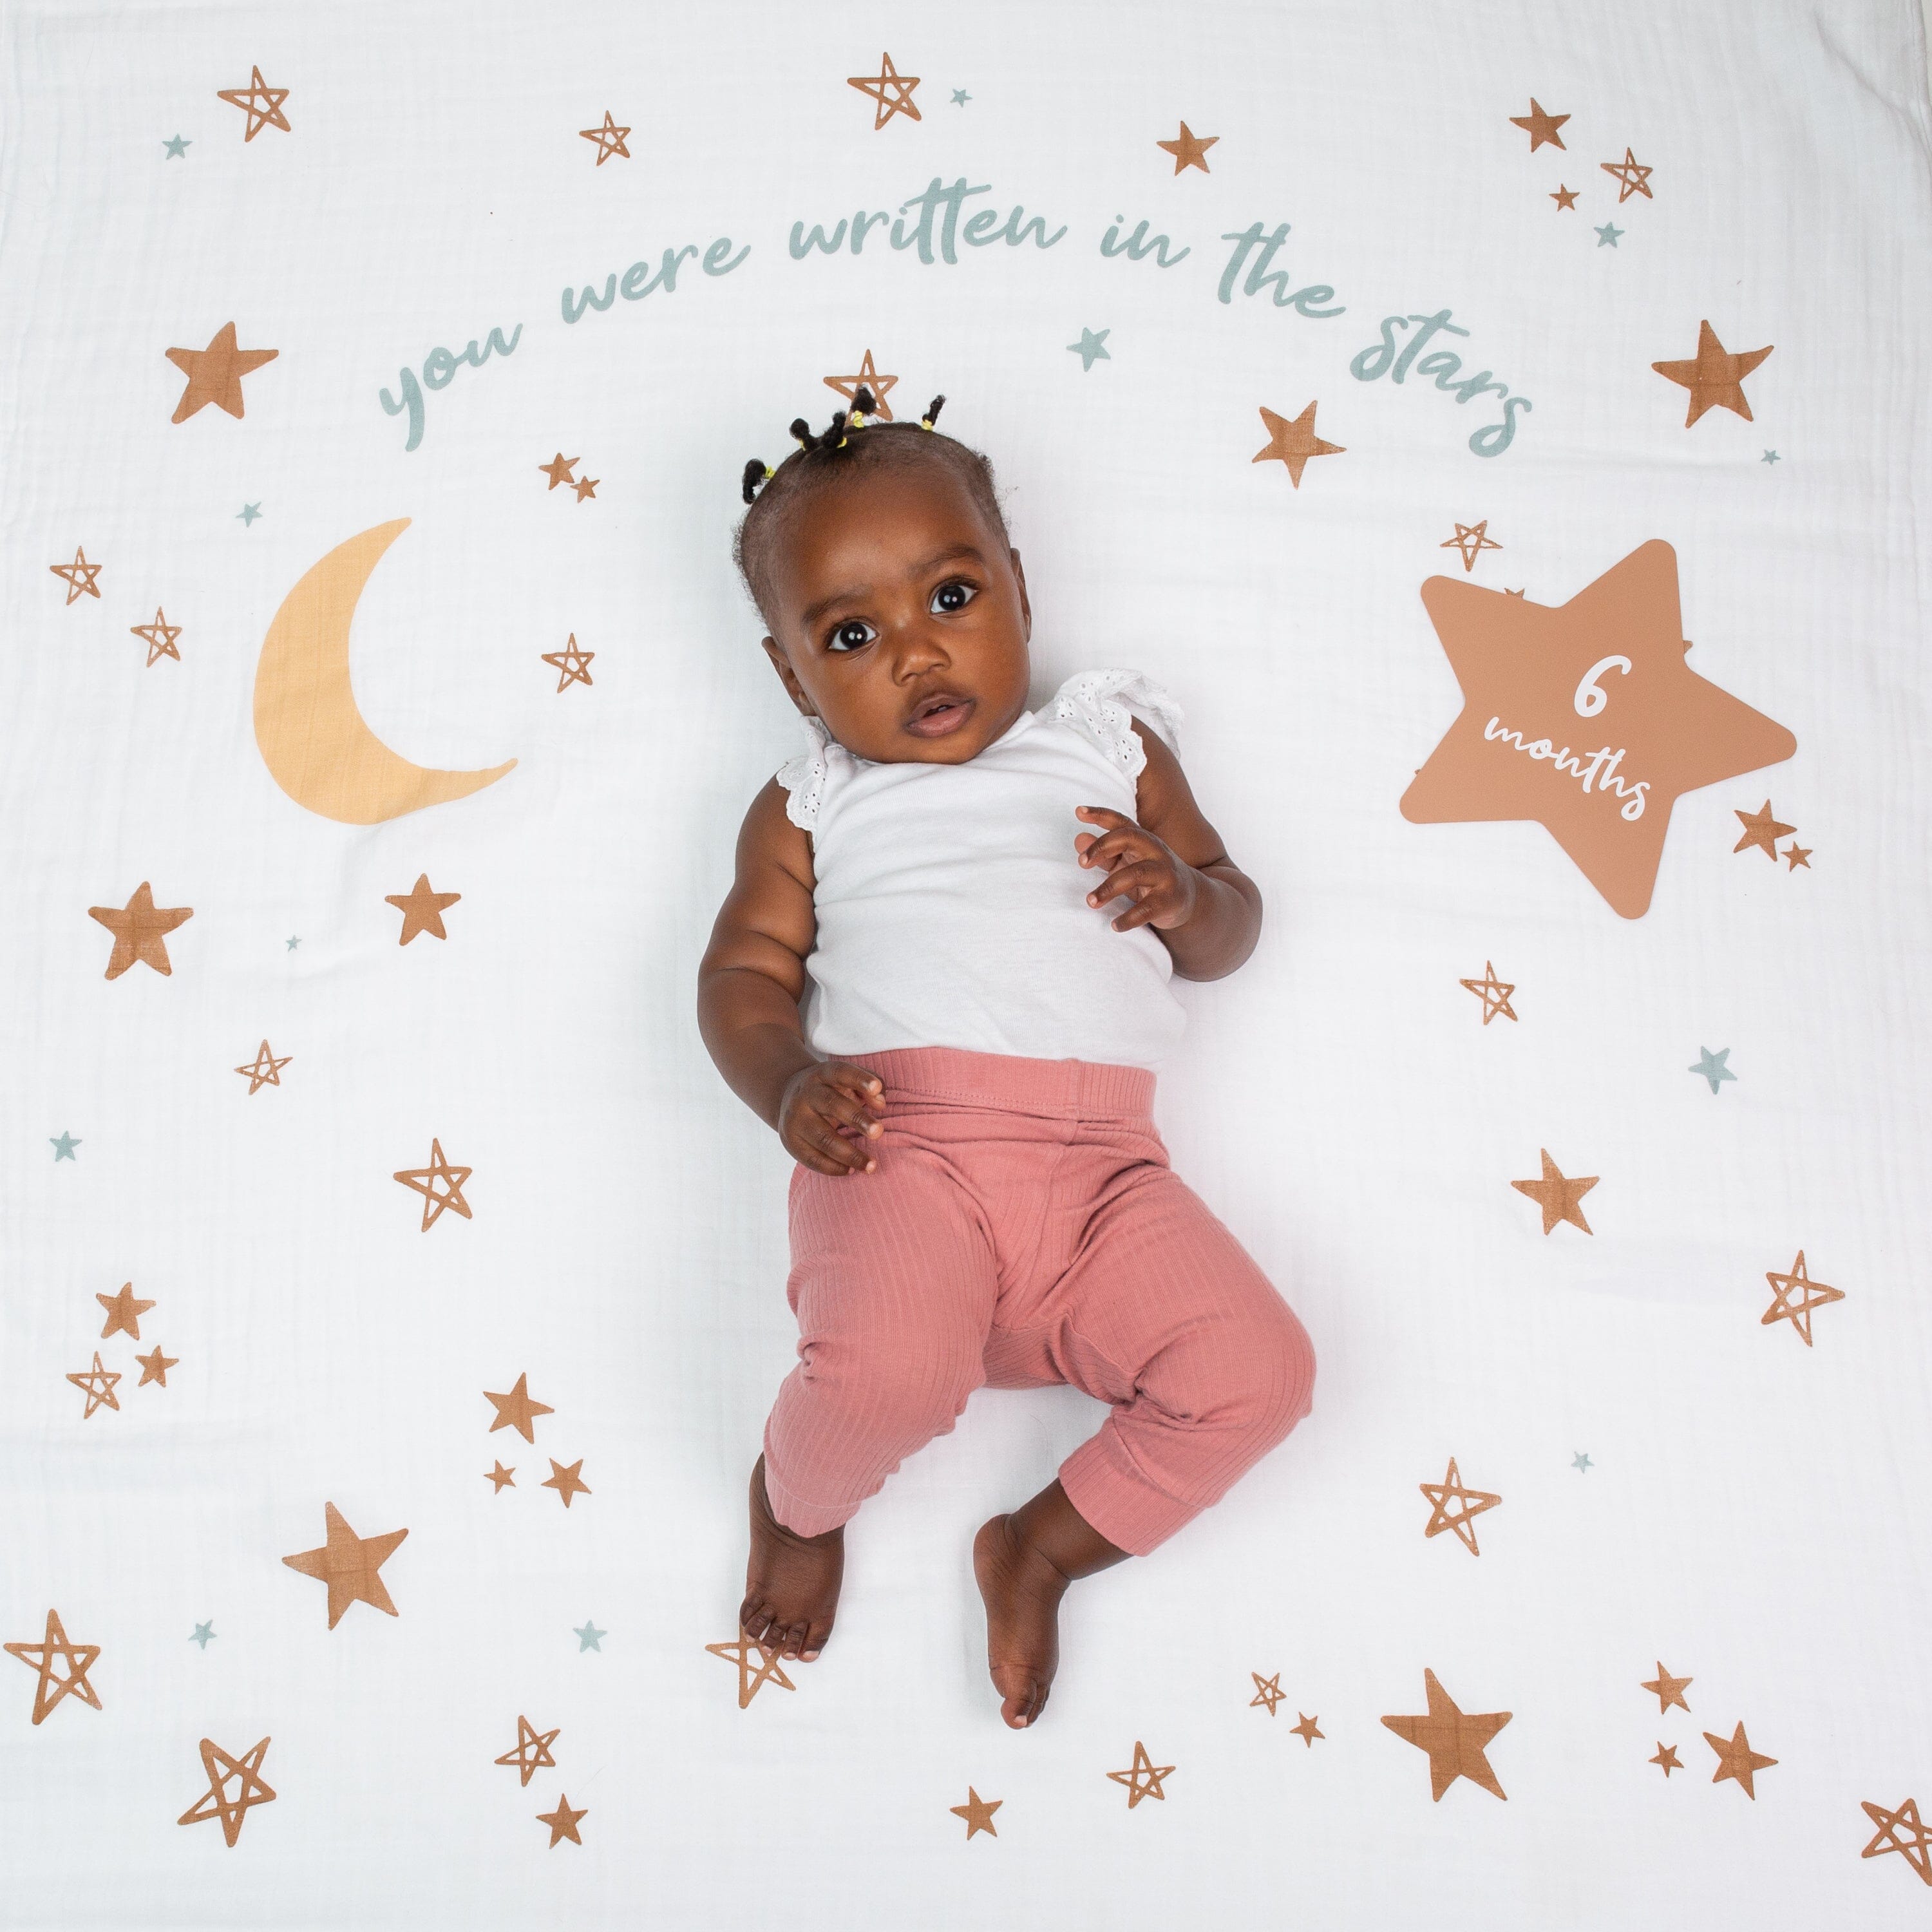 6 months old baby on lulujo blanket in written in the stars pattern